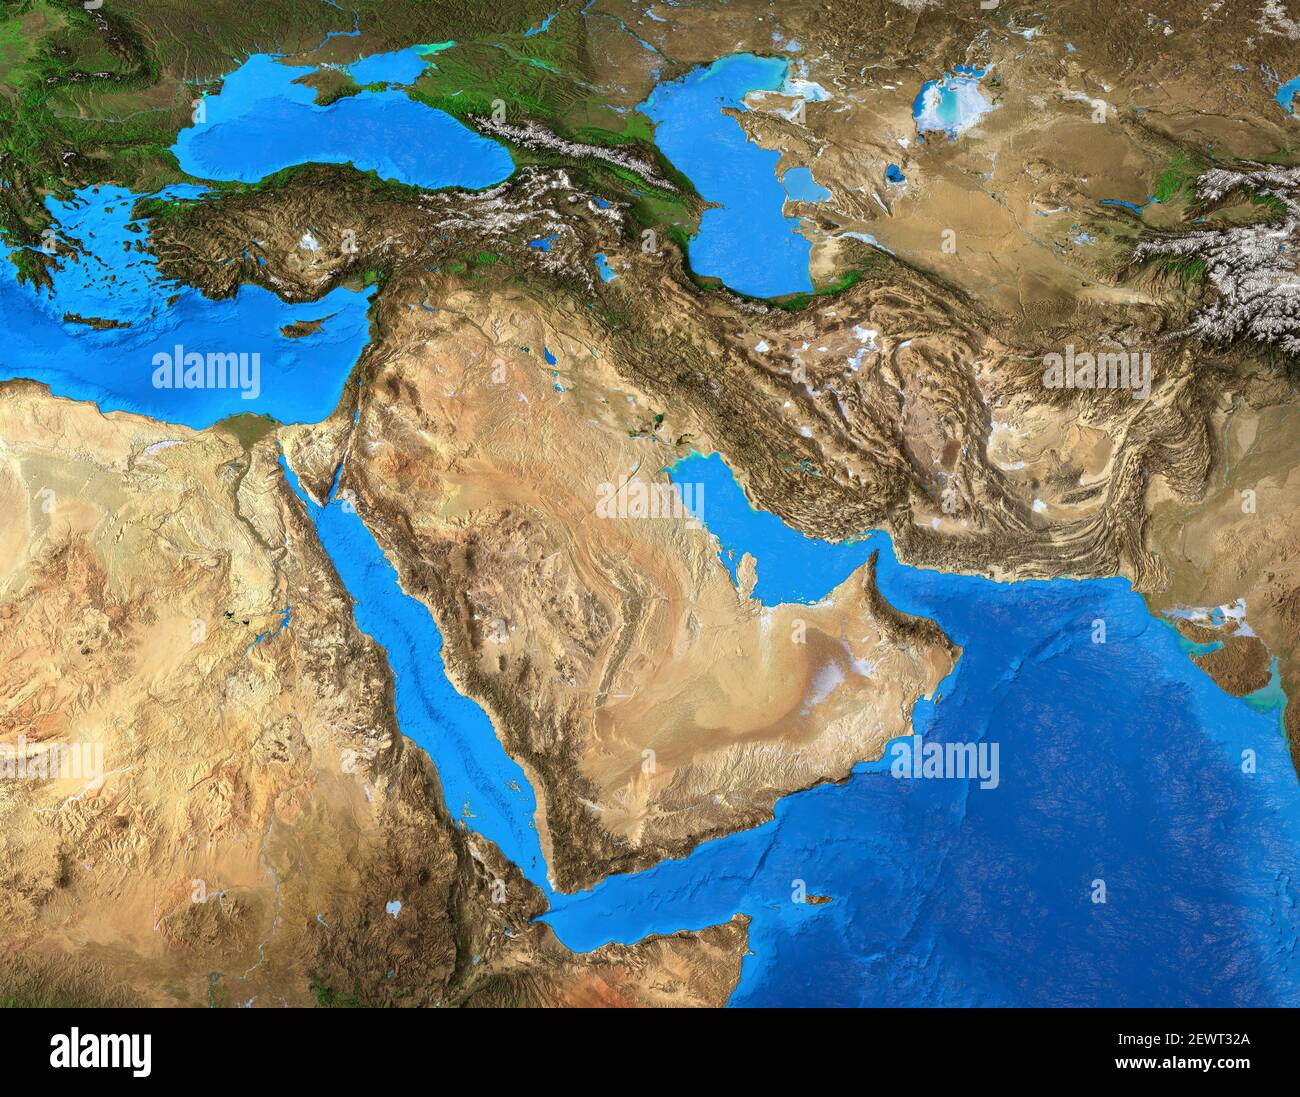 Carte physique du Moyen-Orient. Géographie de la péninsule arabique. Vue plate détaillée de la planète Terre et de ses formes terrestres - éléments fournis par la NASA Banque D'Images